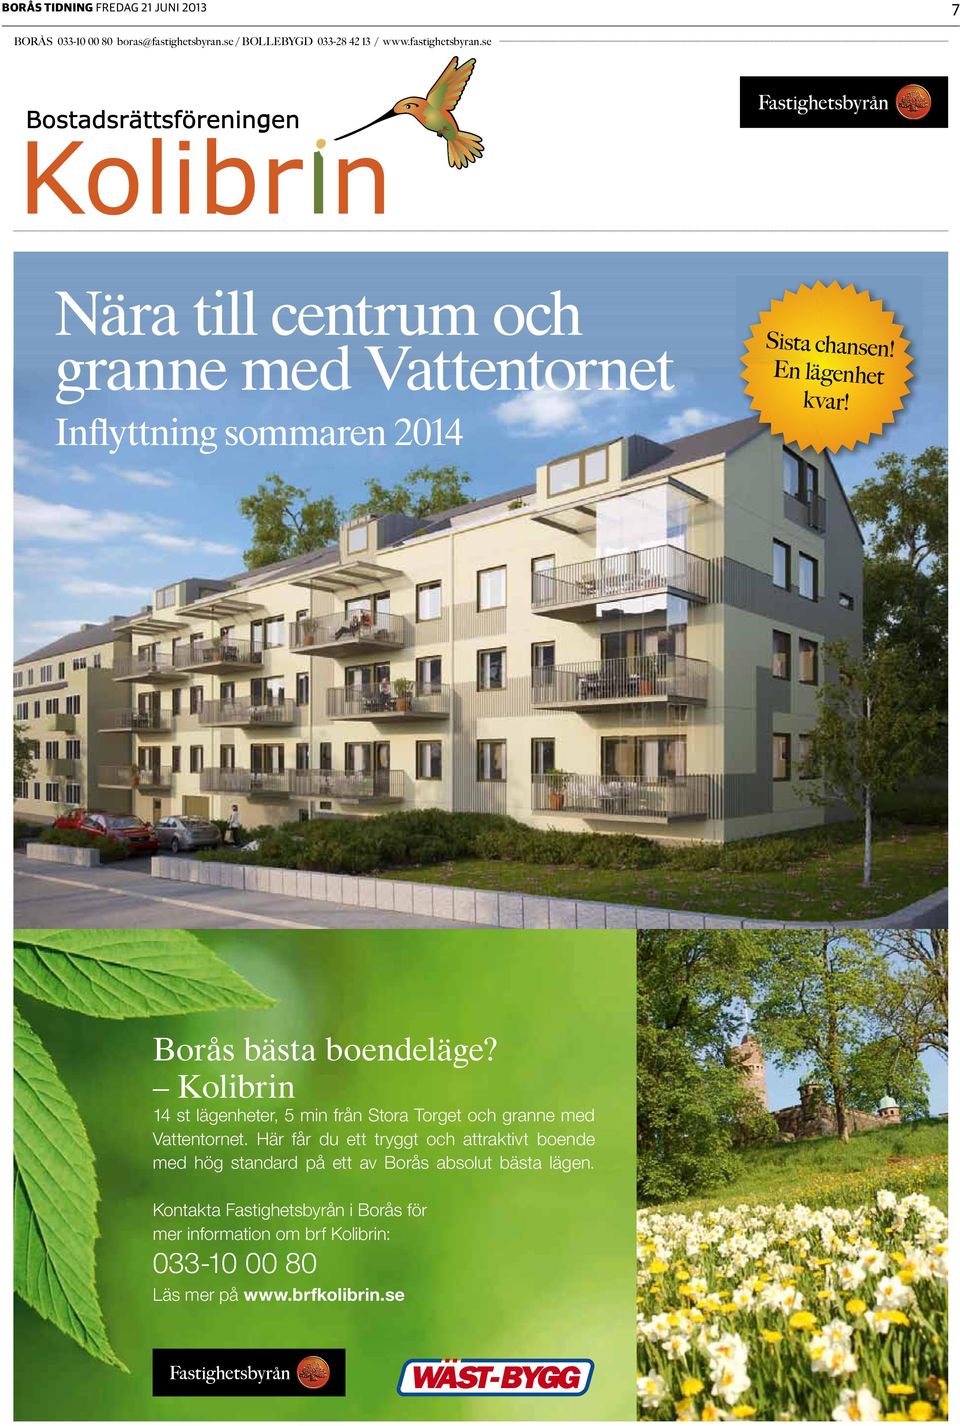 Kolibrin 14 st lägenheter, 5 min från Stora Torget och granne med Vattentornet.